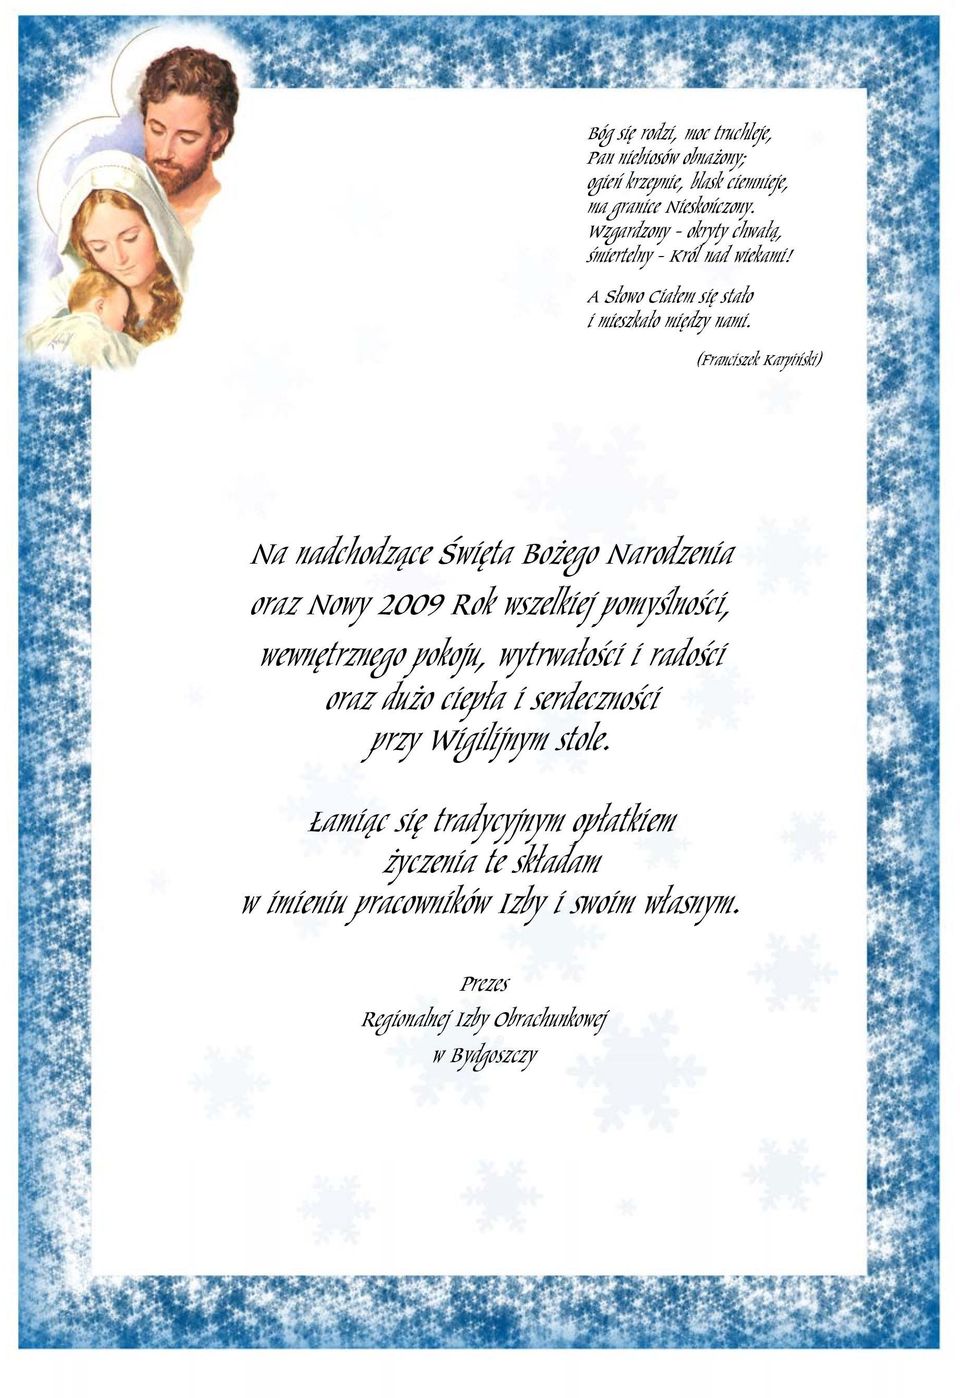 (Franciszek Karpiński) Na nadchodzące Święta Bożego Narodzenia oraz Nowy 2009 Rok wszelkiej pomyślności, wewnętrznego pokoju, wytrwałości i